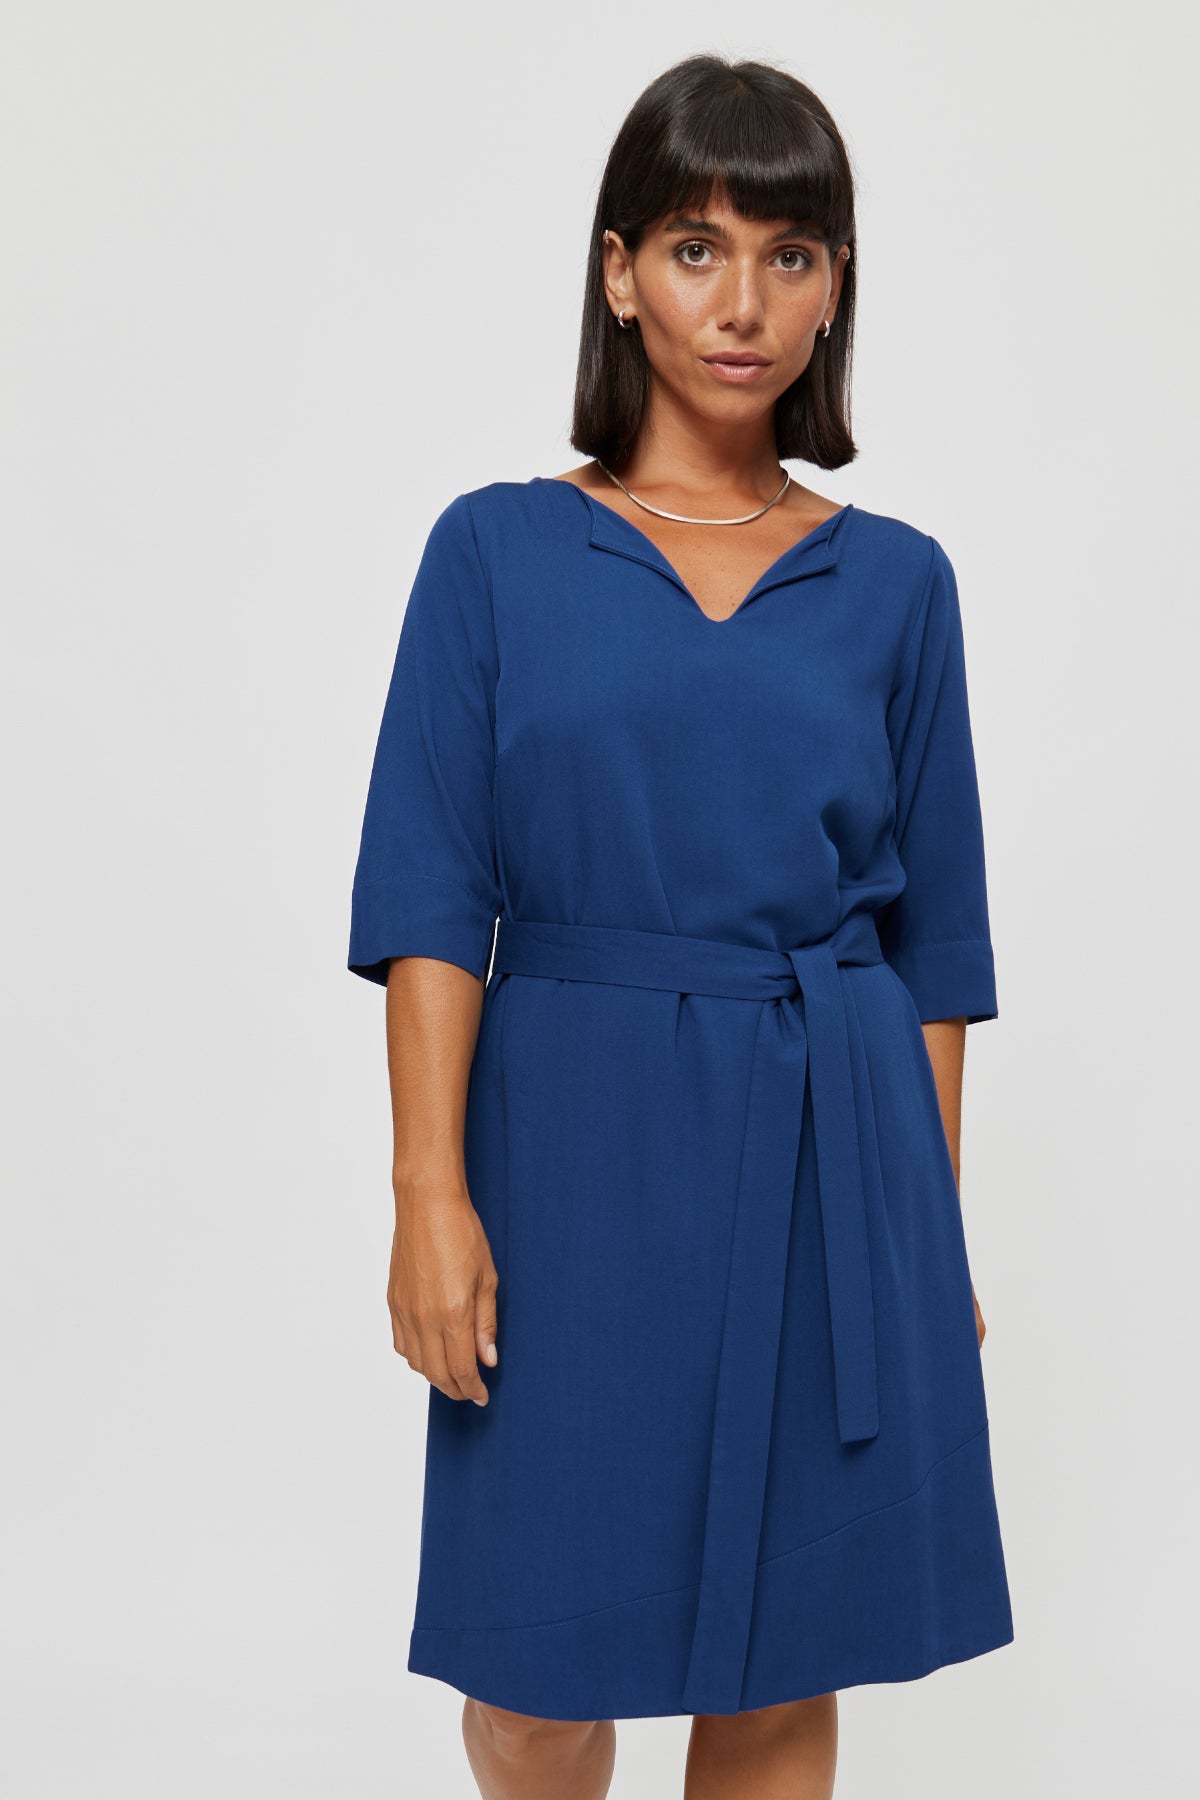 Blaues Kleid Catherine aus 100% Viskose von Ayani